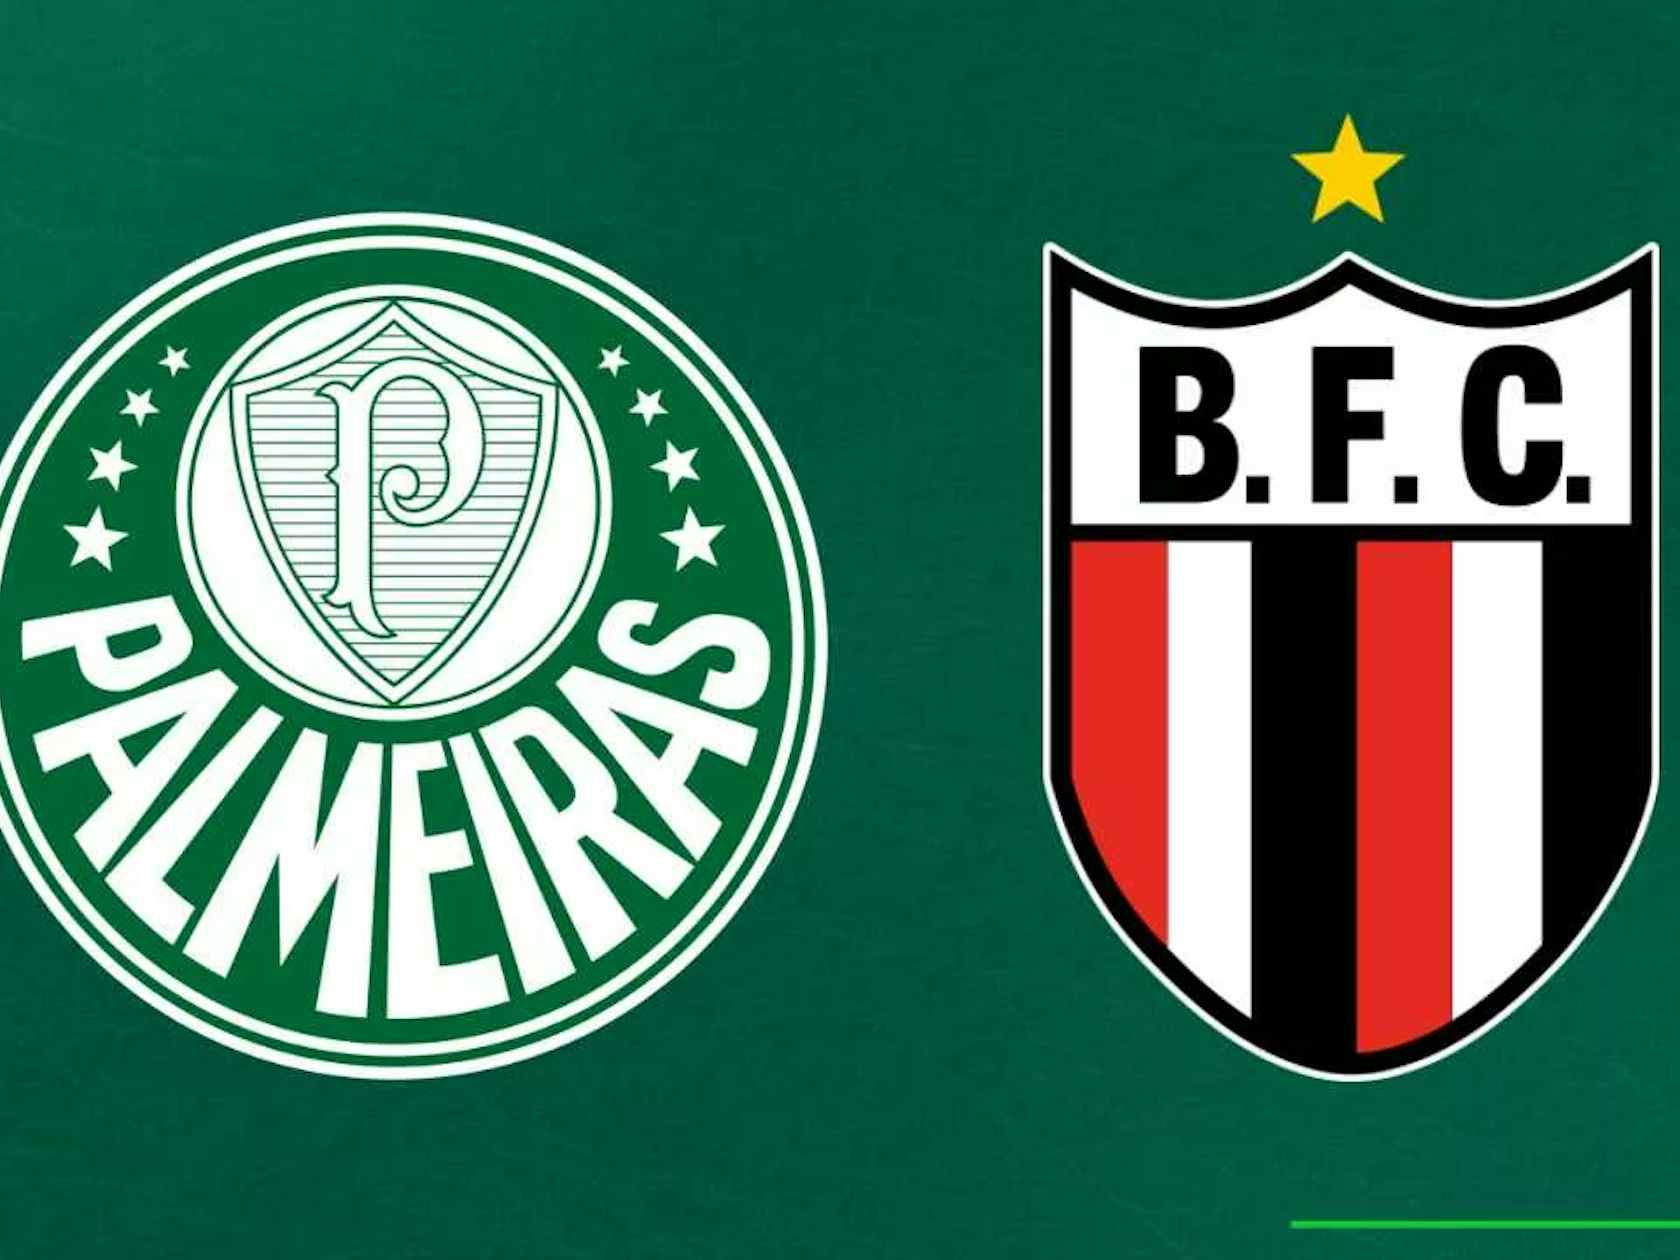 JOGO DE COPA! Confira onde assistir a estreia do Palmeiras na Copa do Brasil!